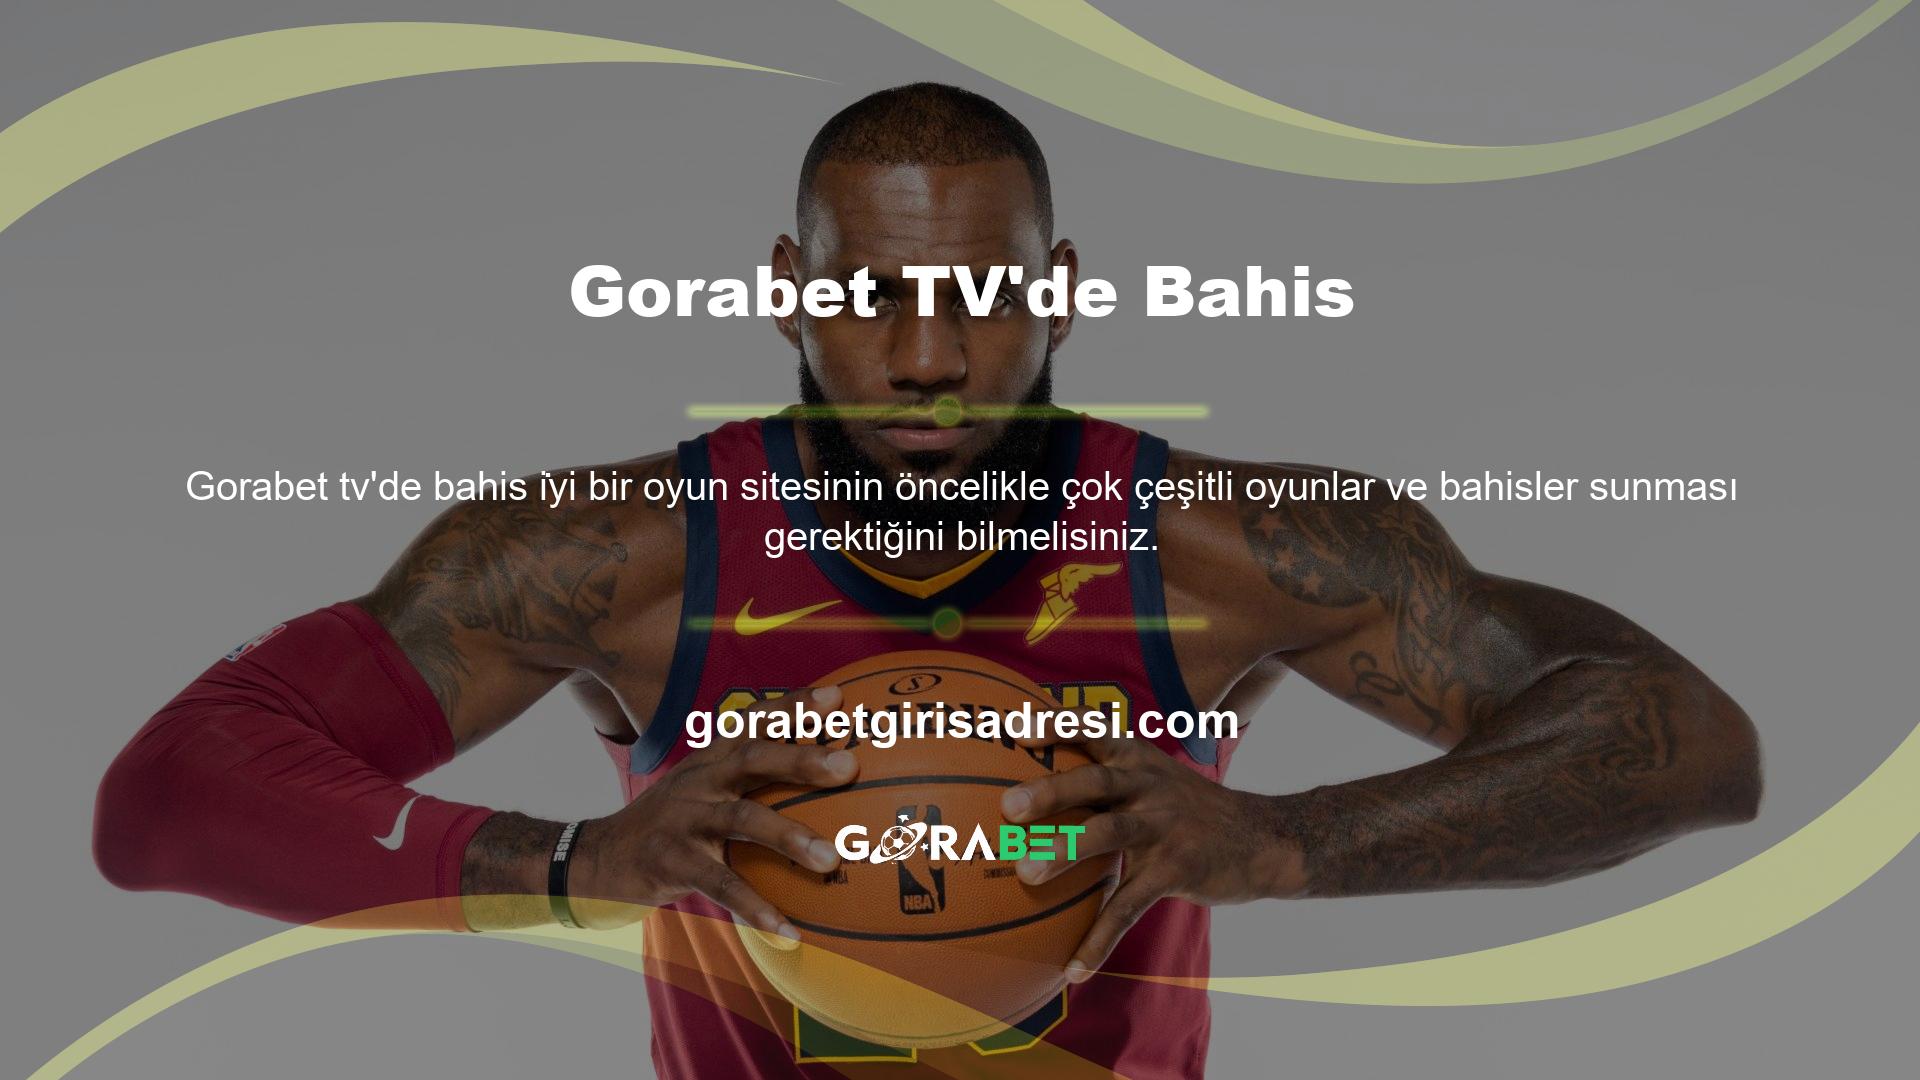 Sitede bu seçeneklerden ne kadar çok bulursanız Gorabet TV’deki bahis çeşitliliği ve kalitesi de o kadar artar